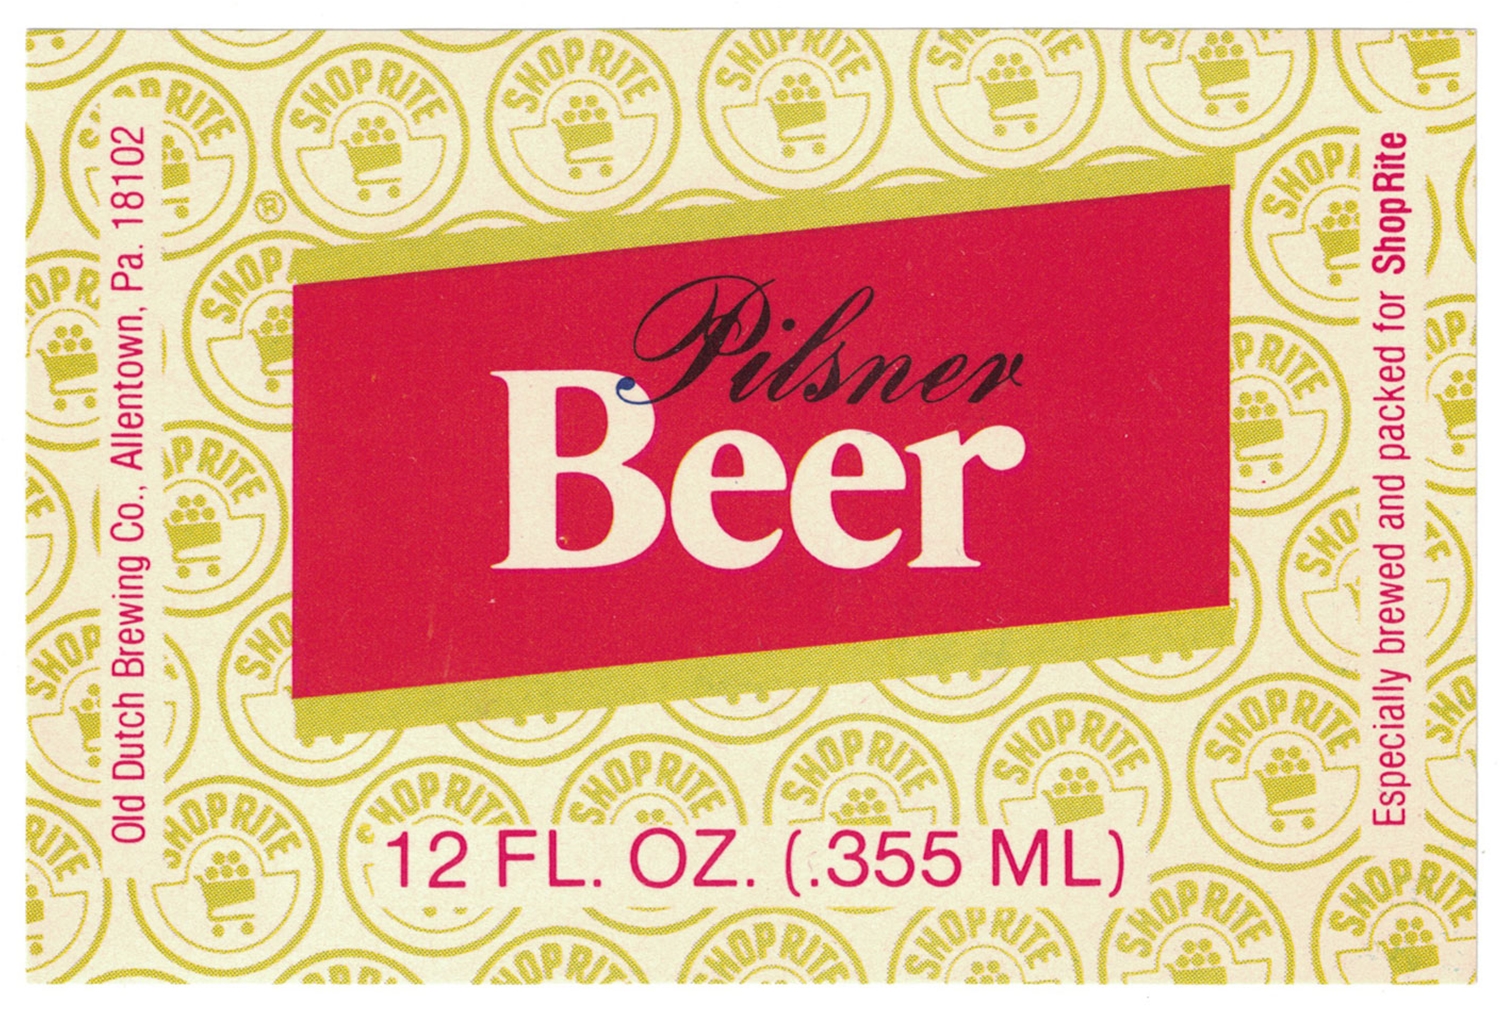 Shop-Rite Pilsner Beer Label